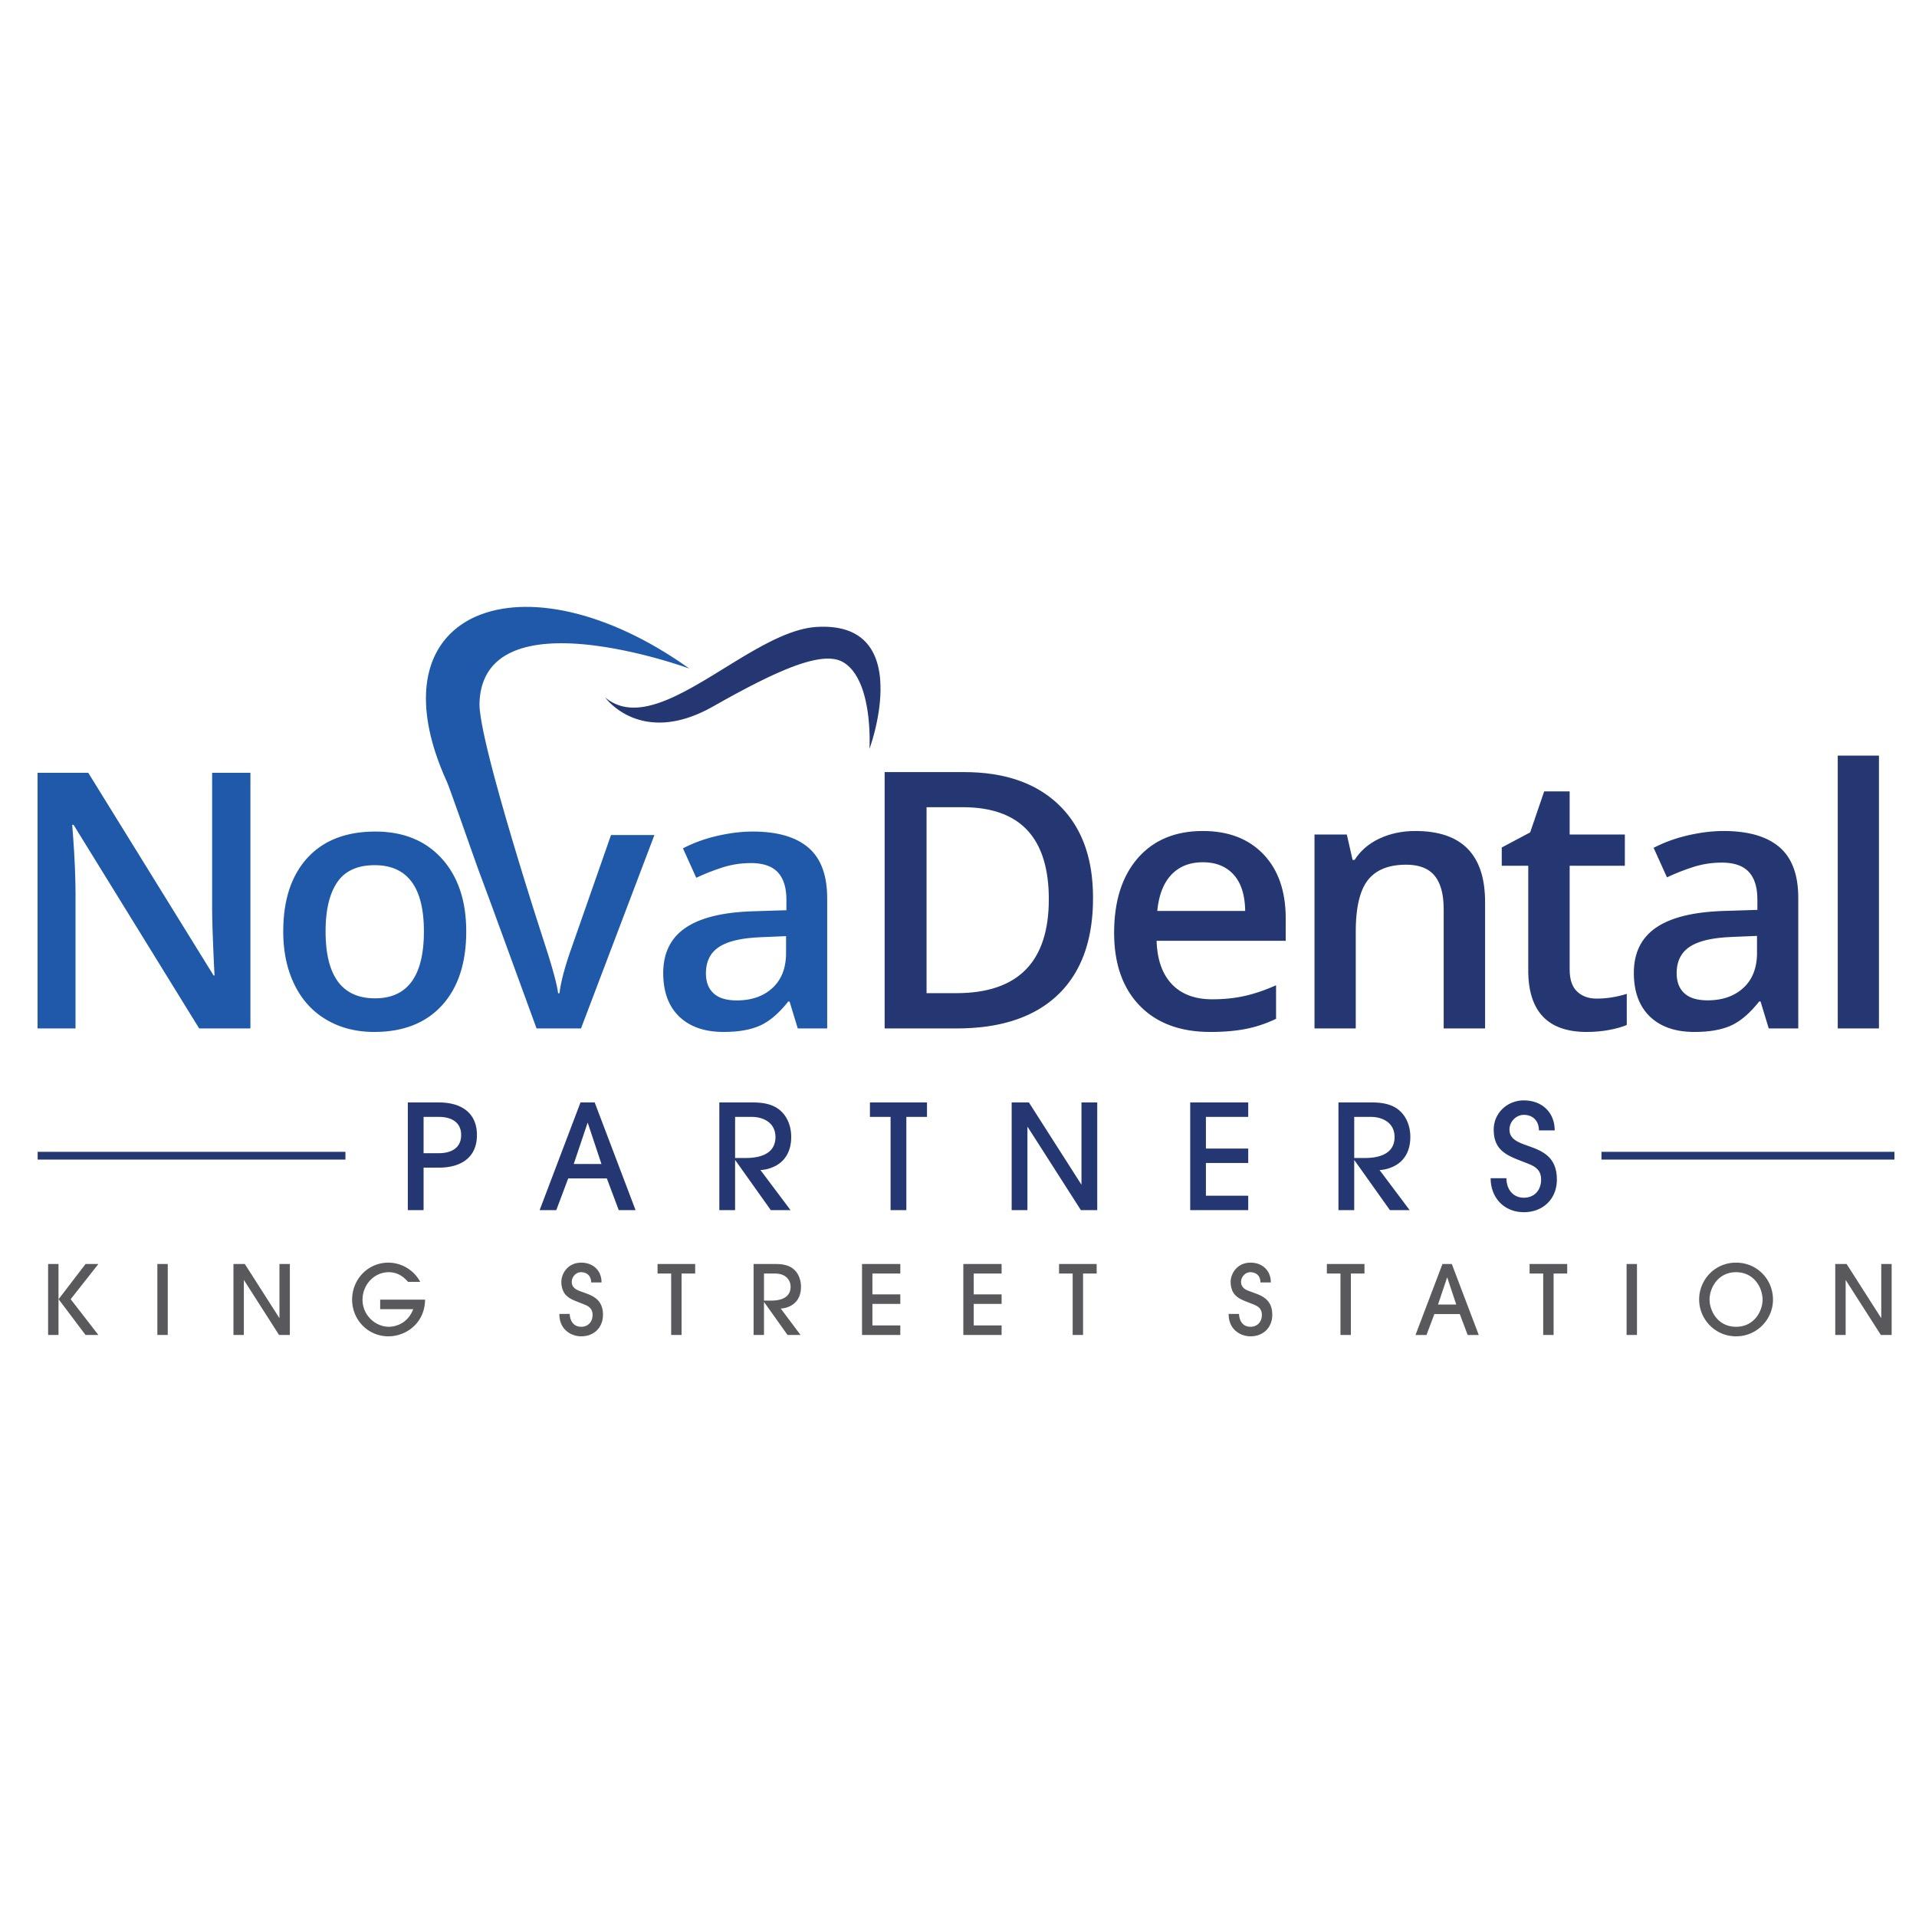 Nova Dental Partners - King Street Station - Alexandria, VA 22314 - (703)548-6100 | ShowMeLocal.com